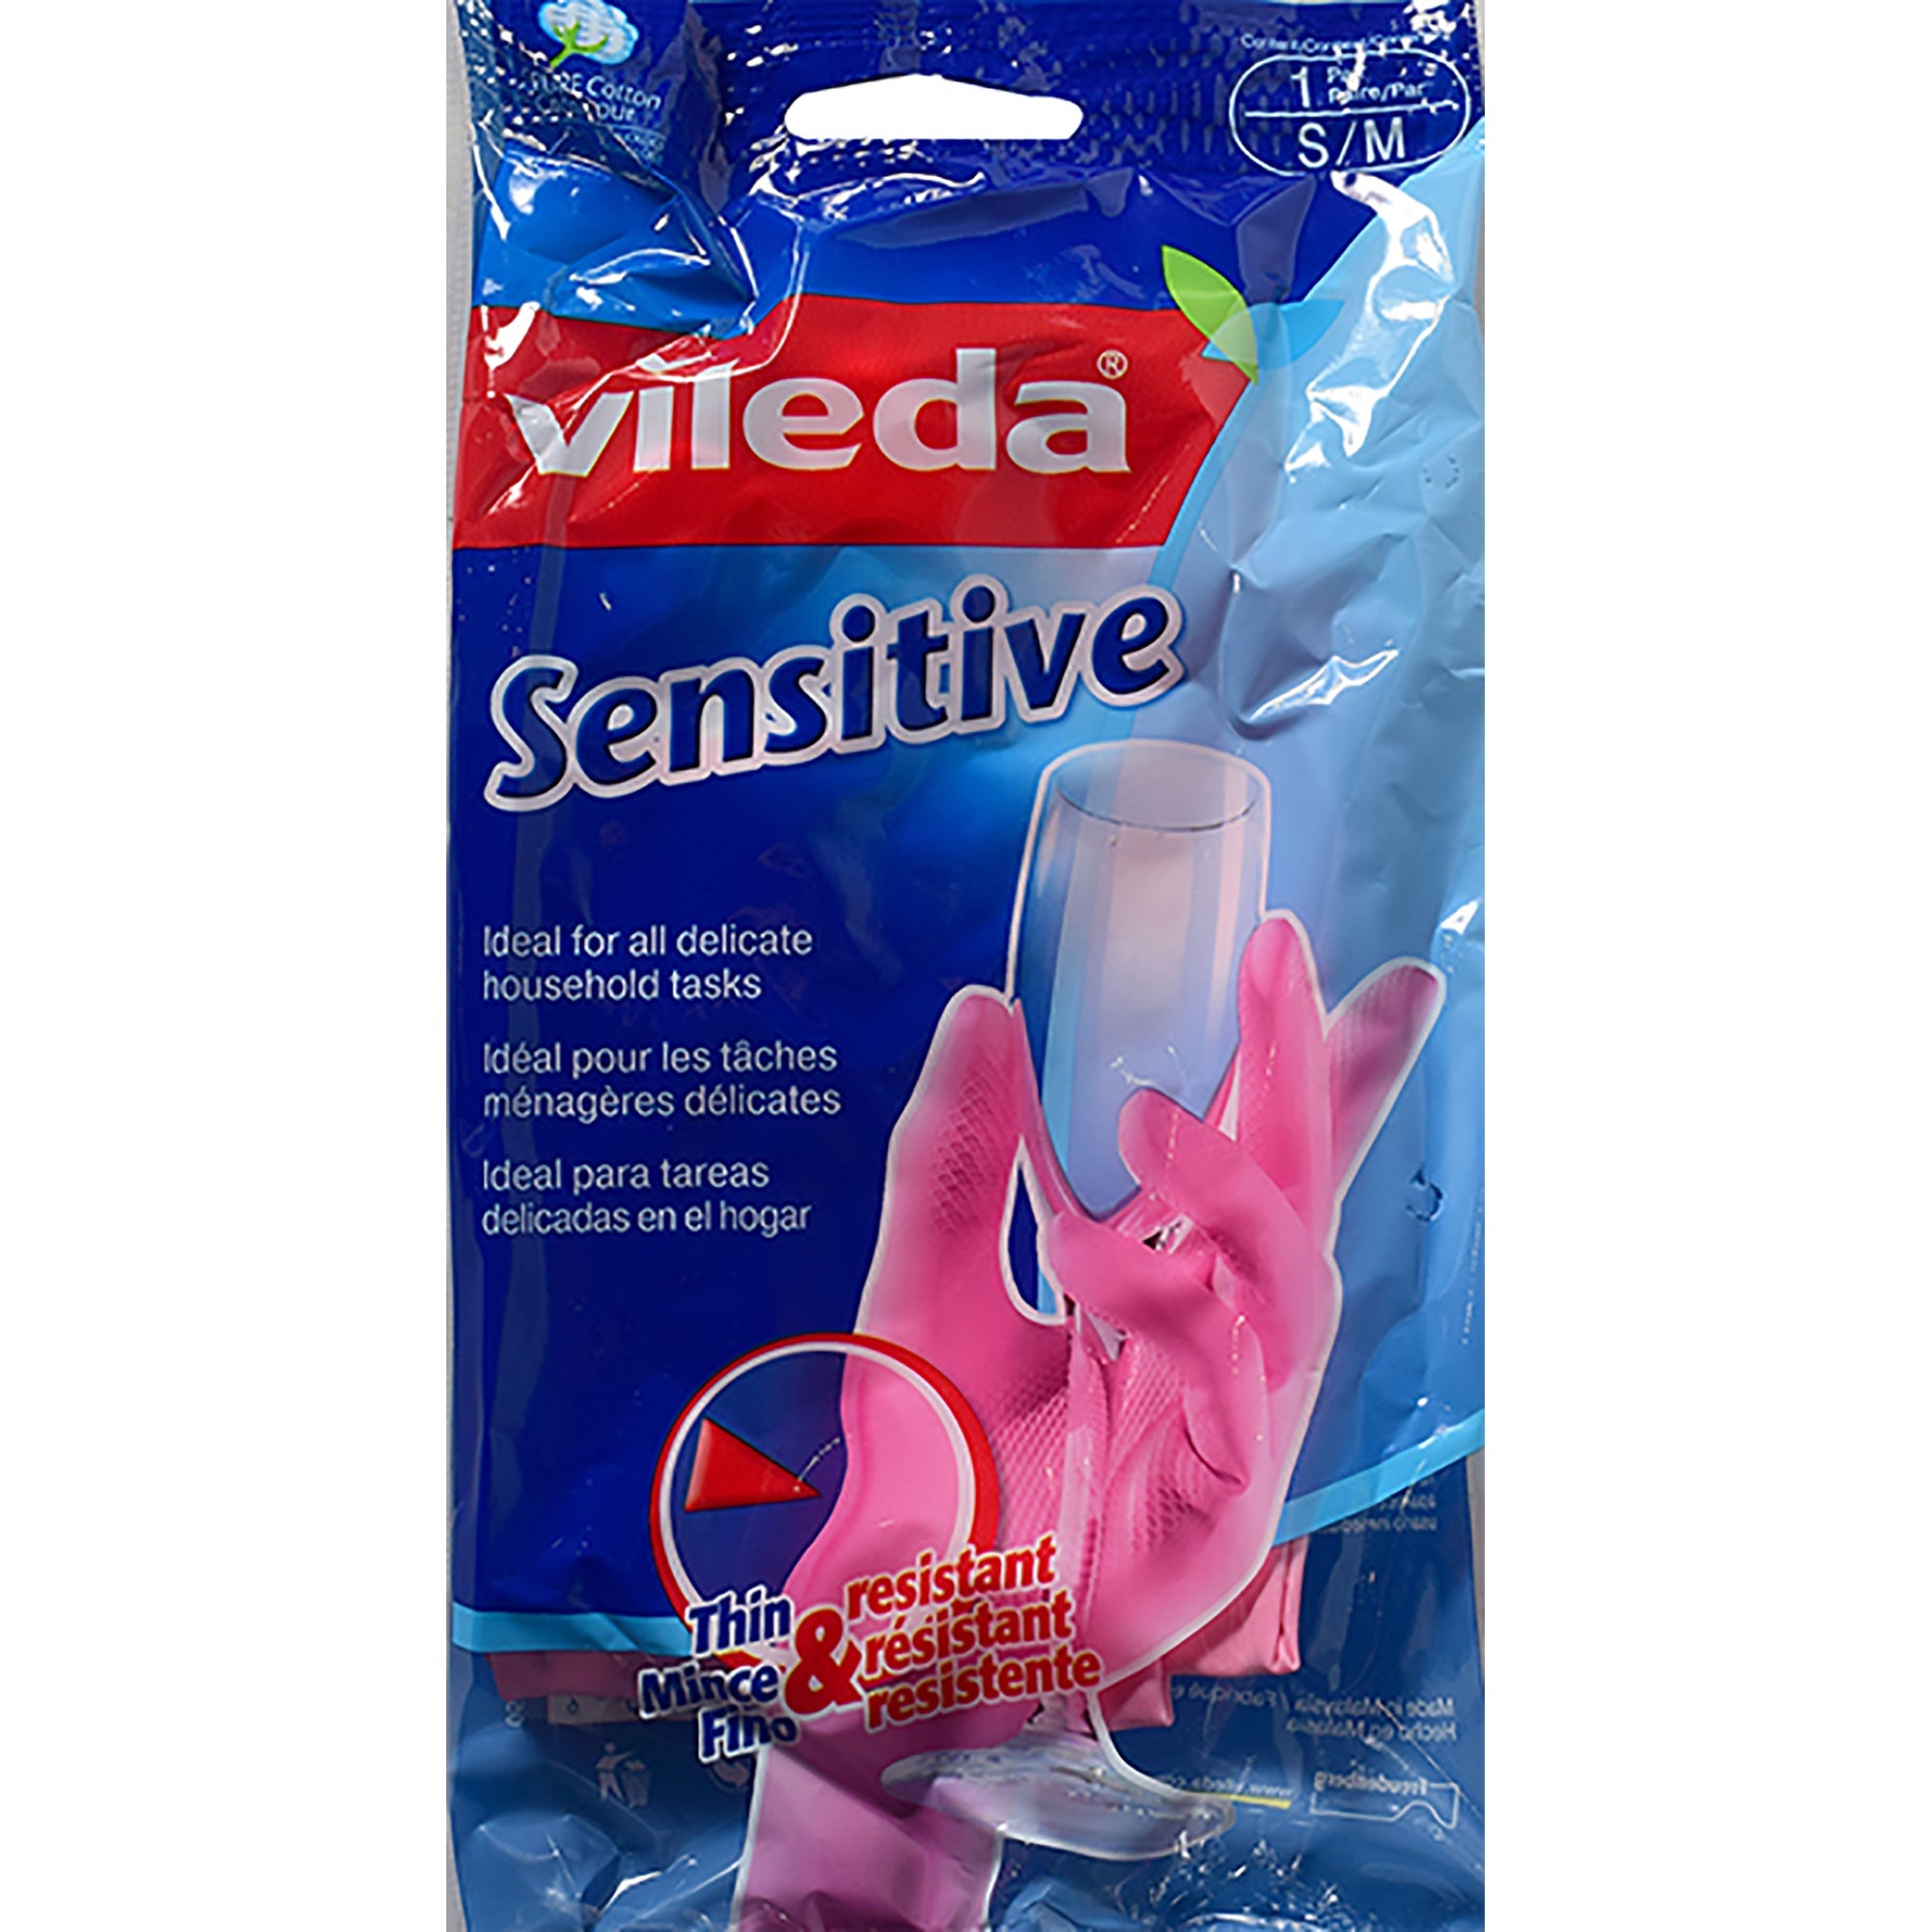 Vileda 1 Pair of Gloves - Sensitive Small/Medium